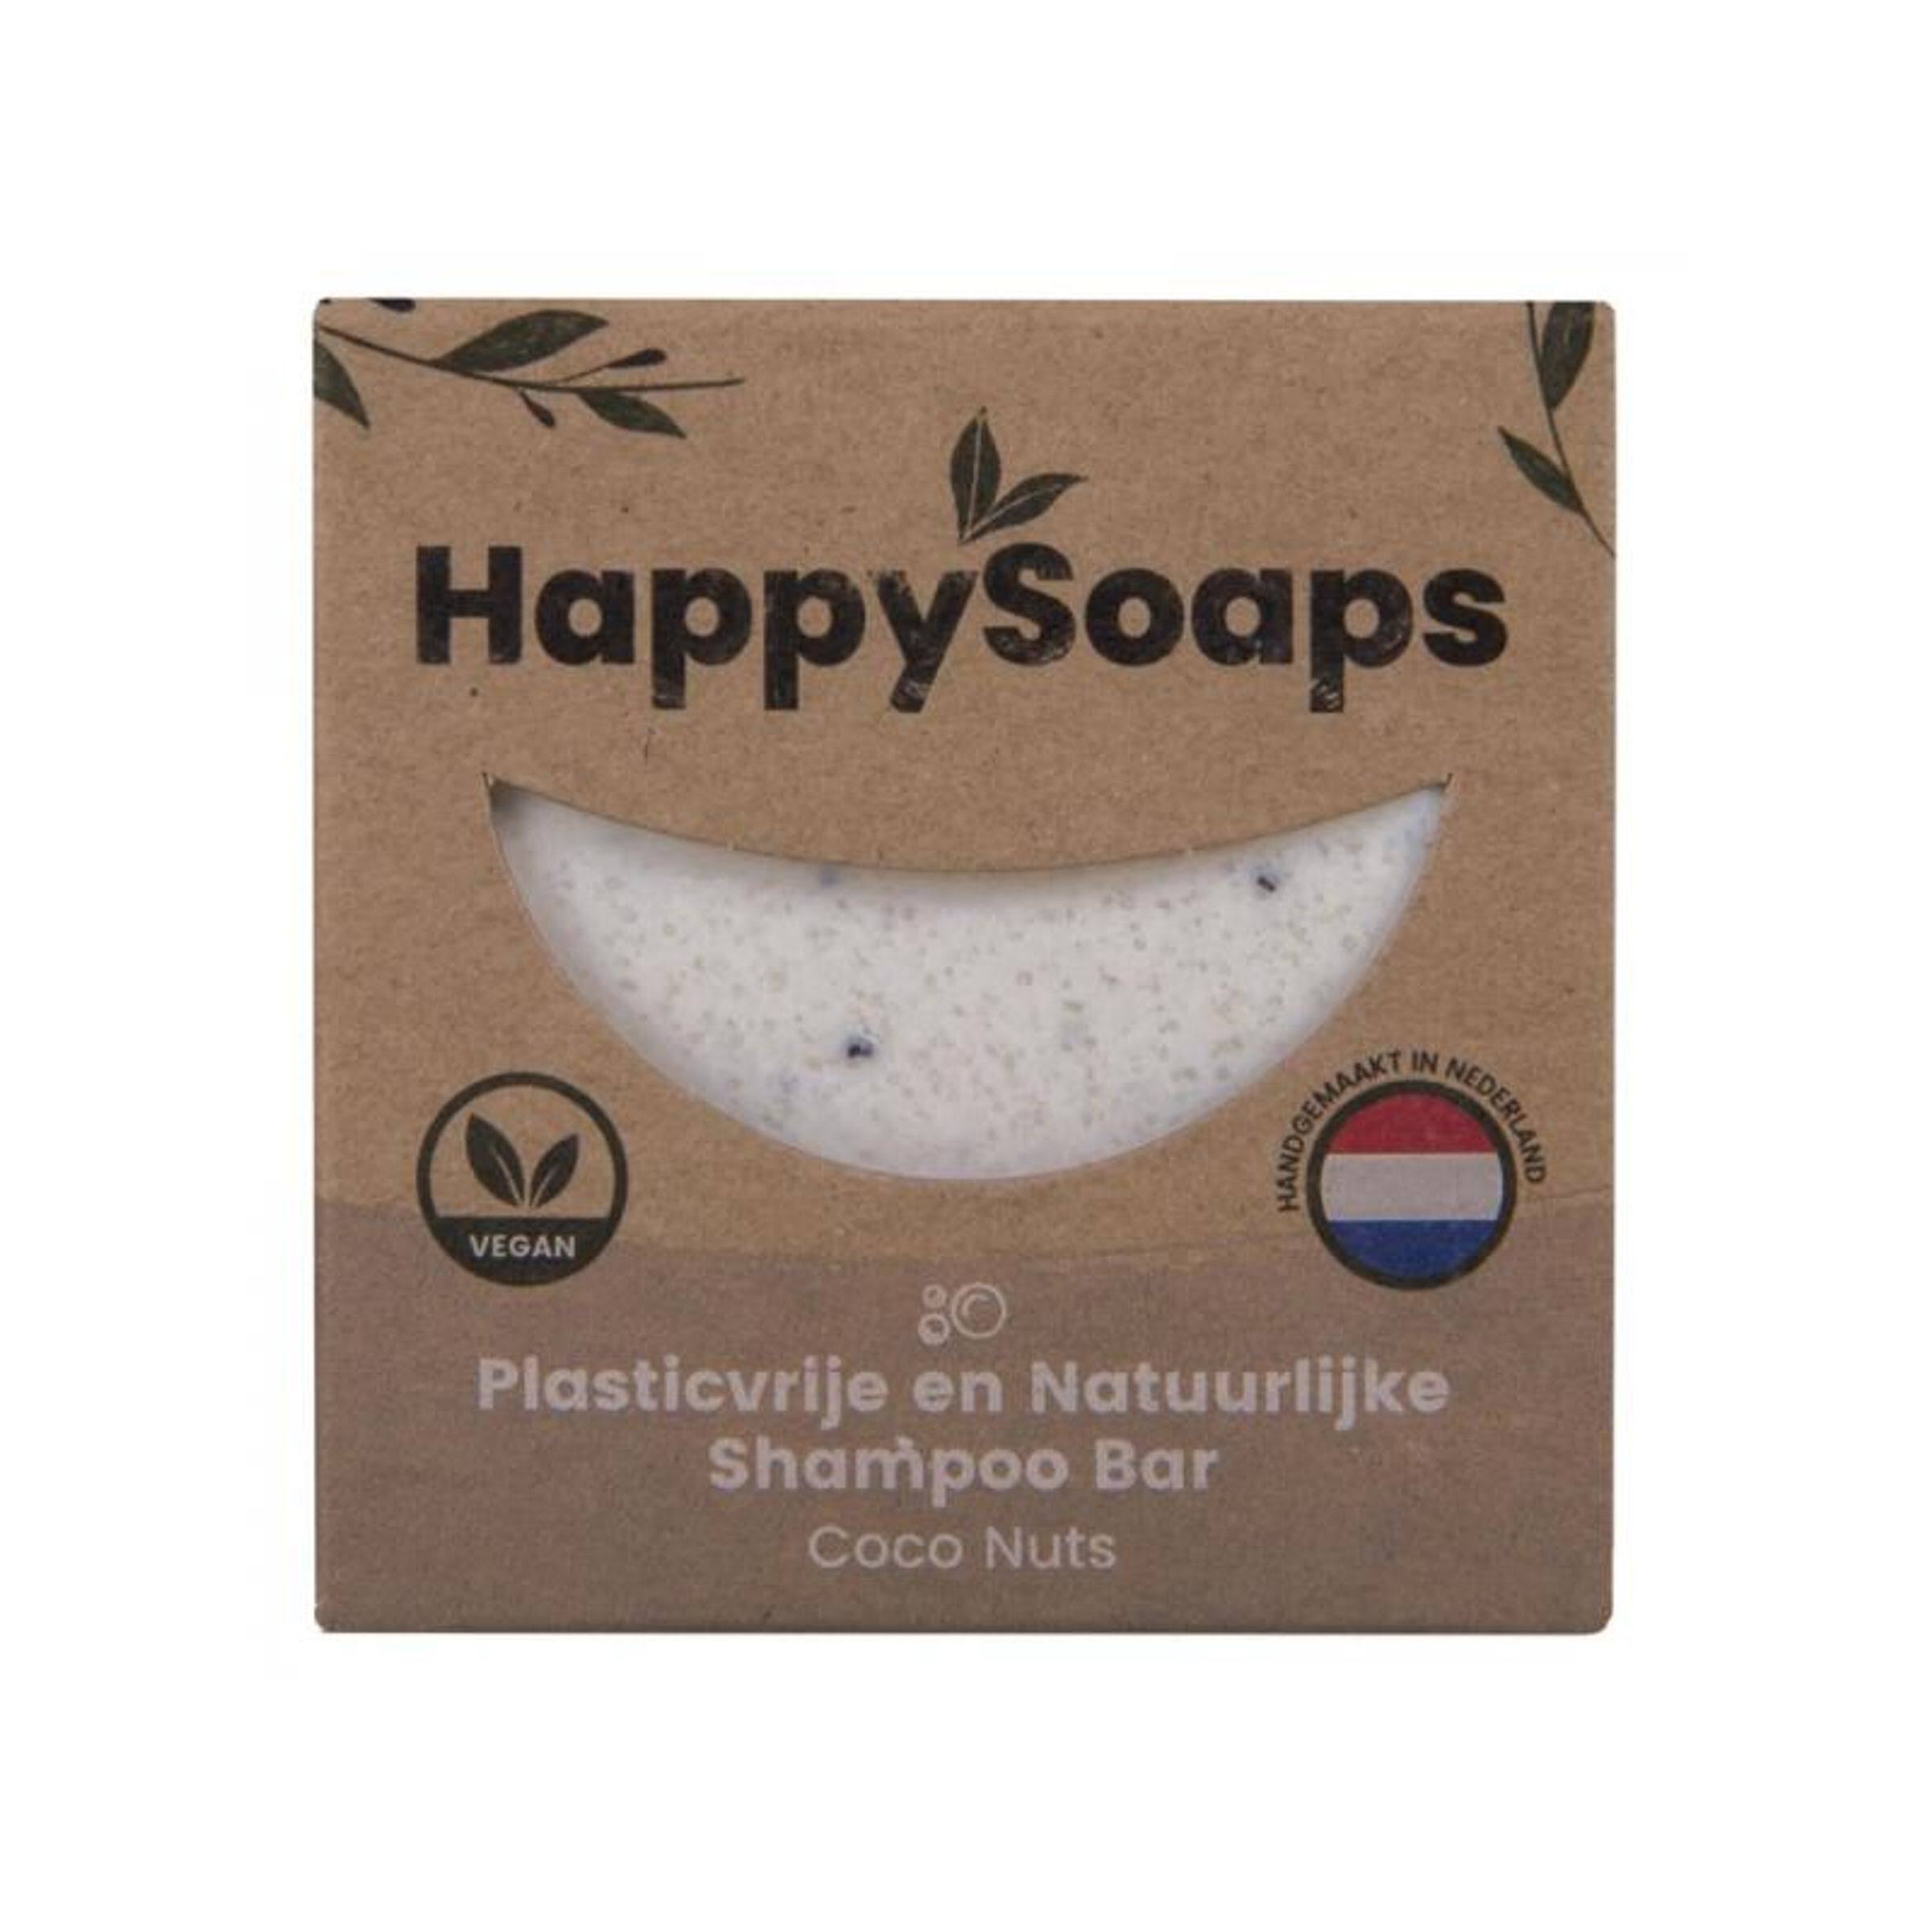 Happysoaps Coco Nuts Shampoo Bar - 70 G